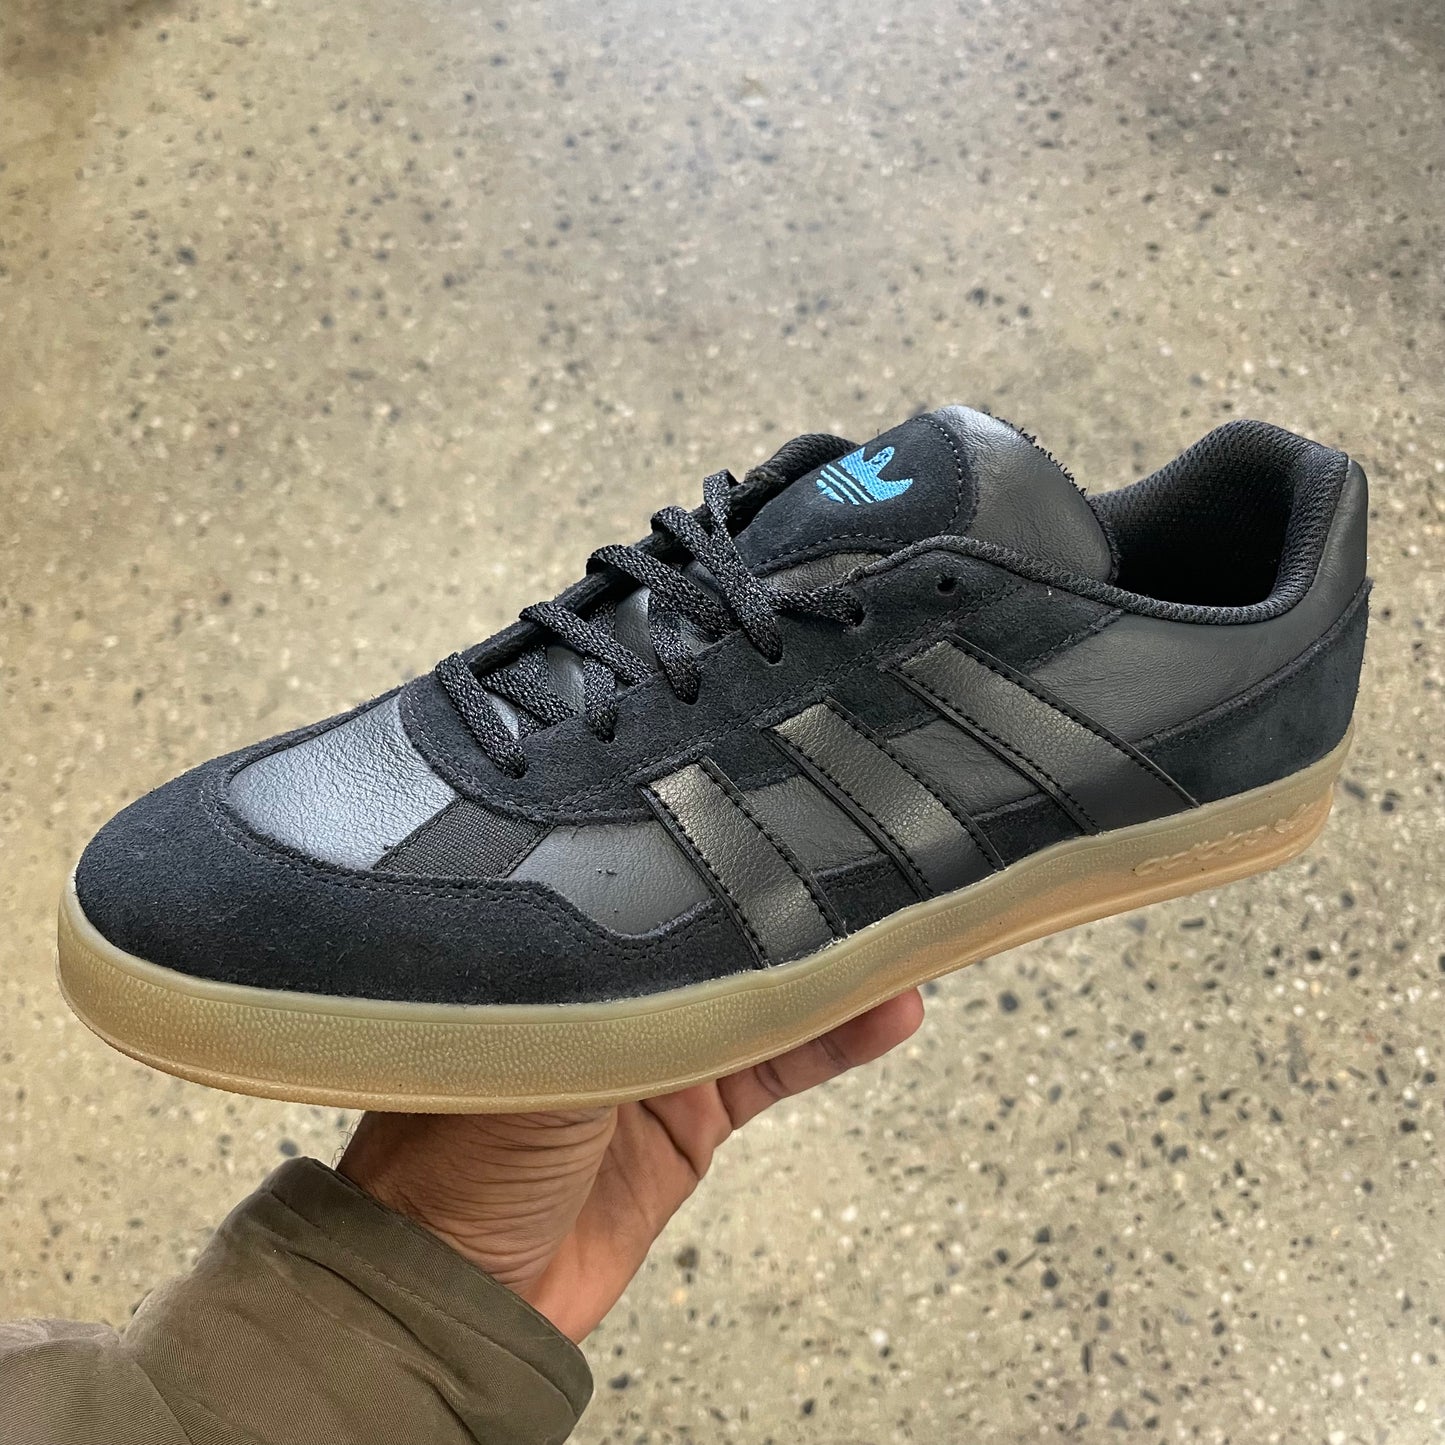 Adidas Aloha Super - Black/Carbon/Gum